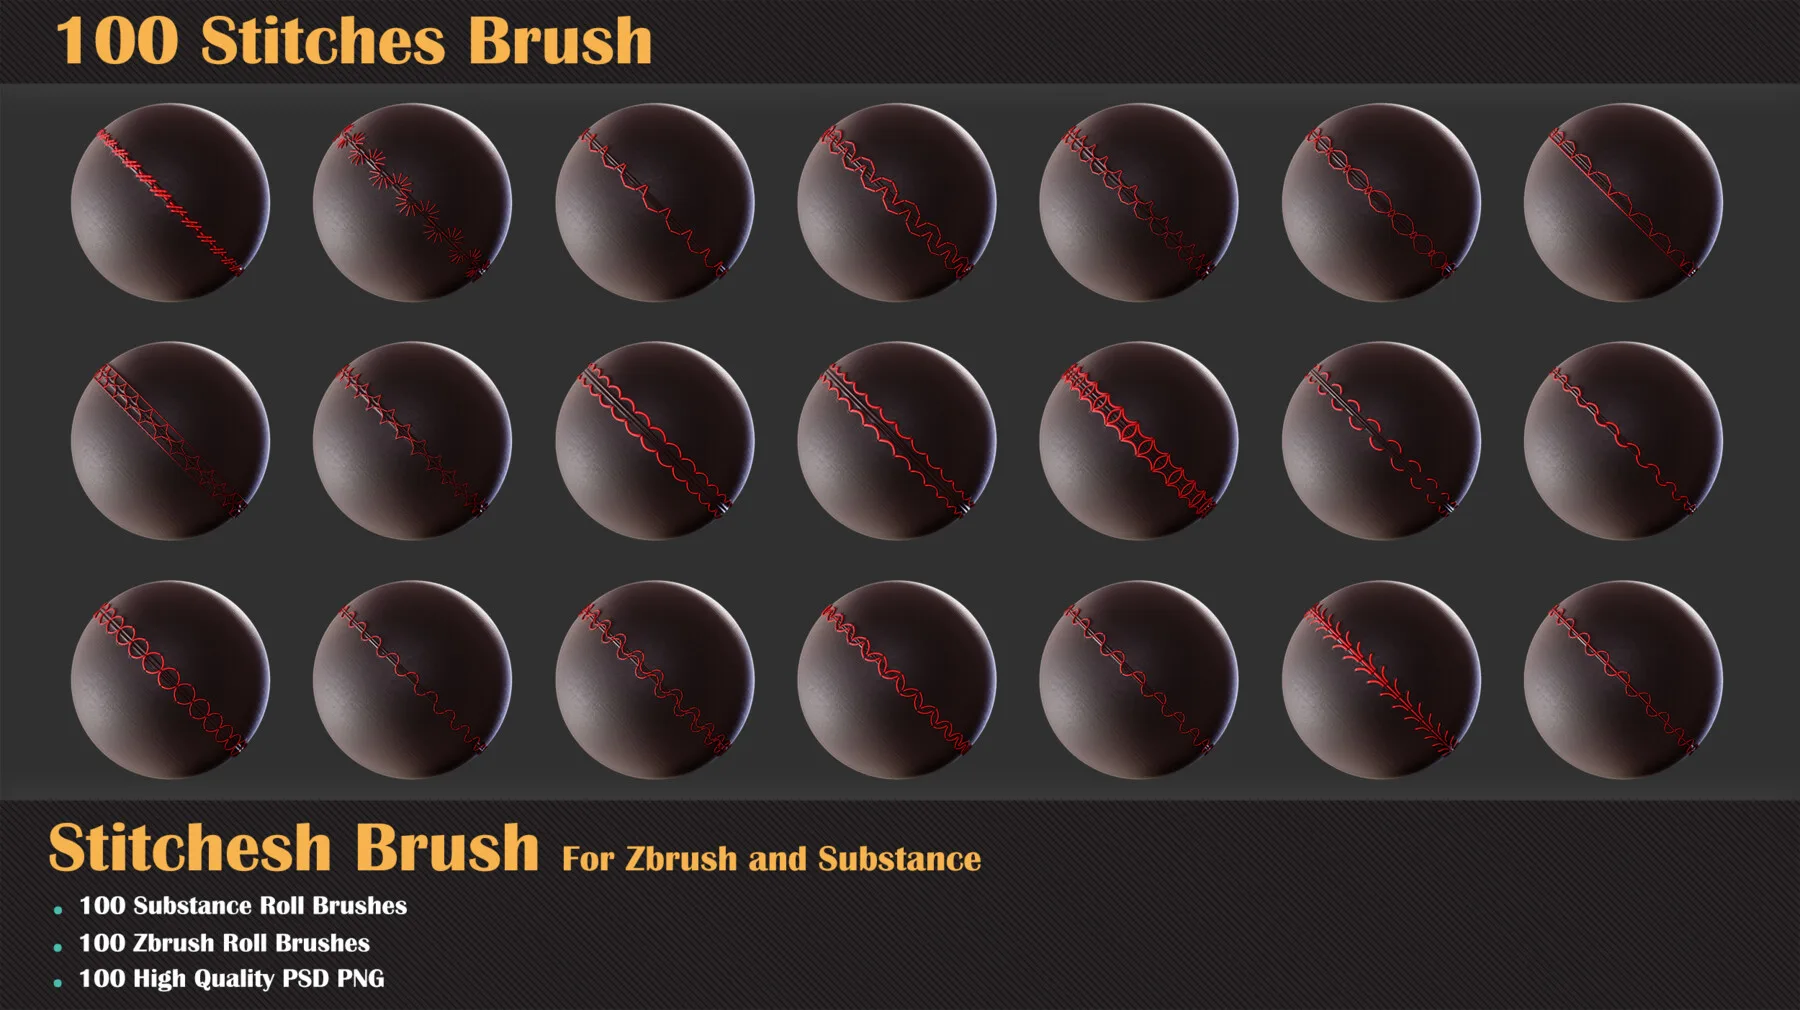 100 Stitches Brush - Substance and Zbrush